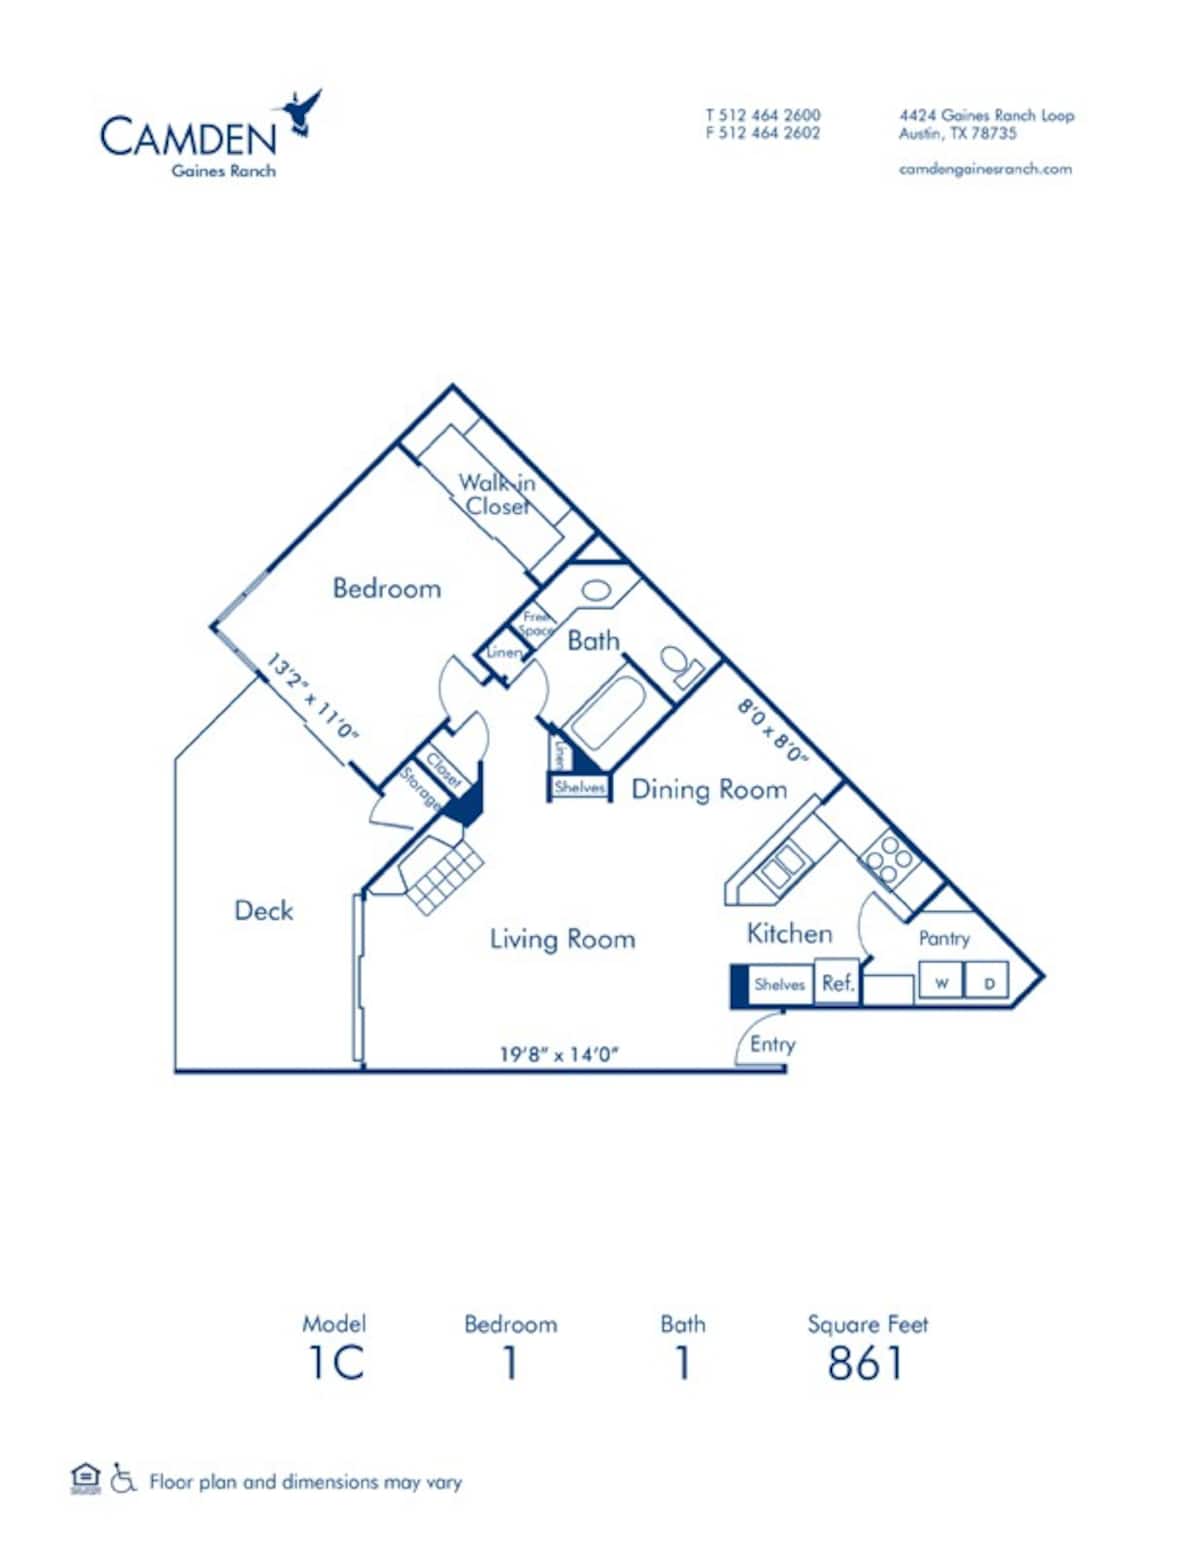 Floorplan diagram for 1C, showing 1 bedroom